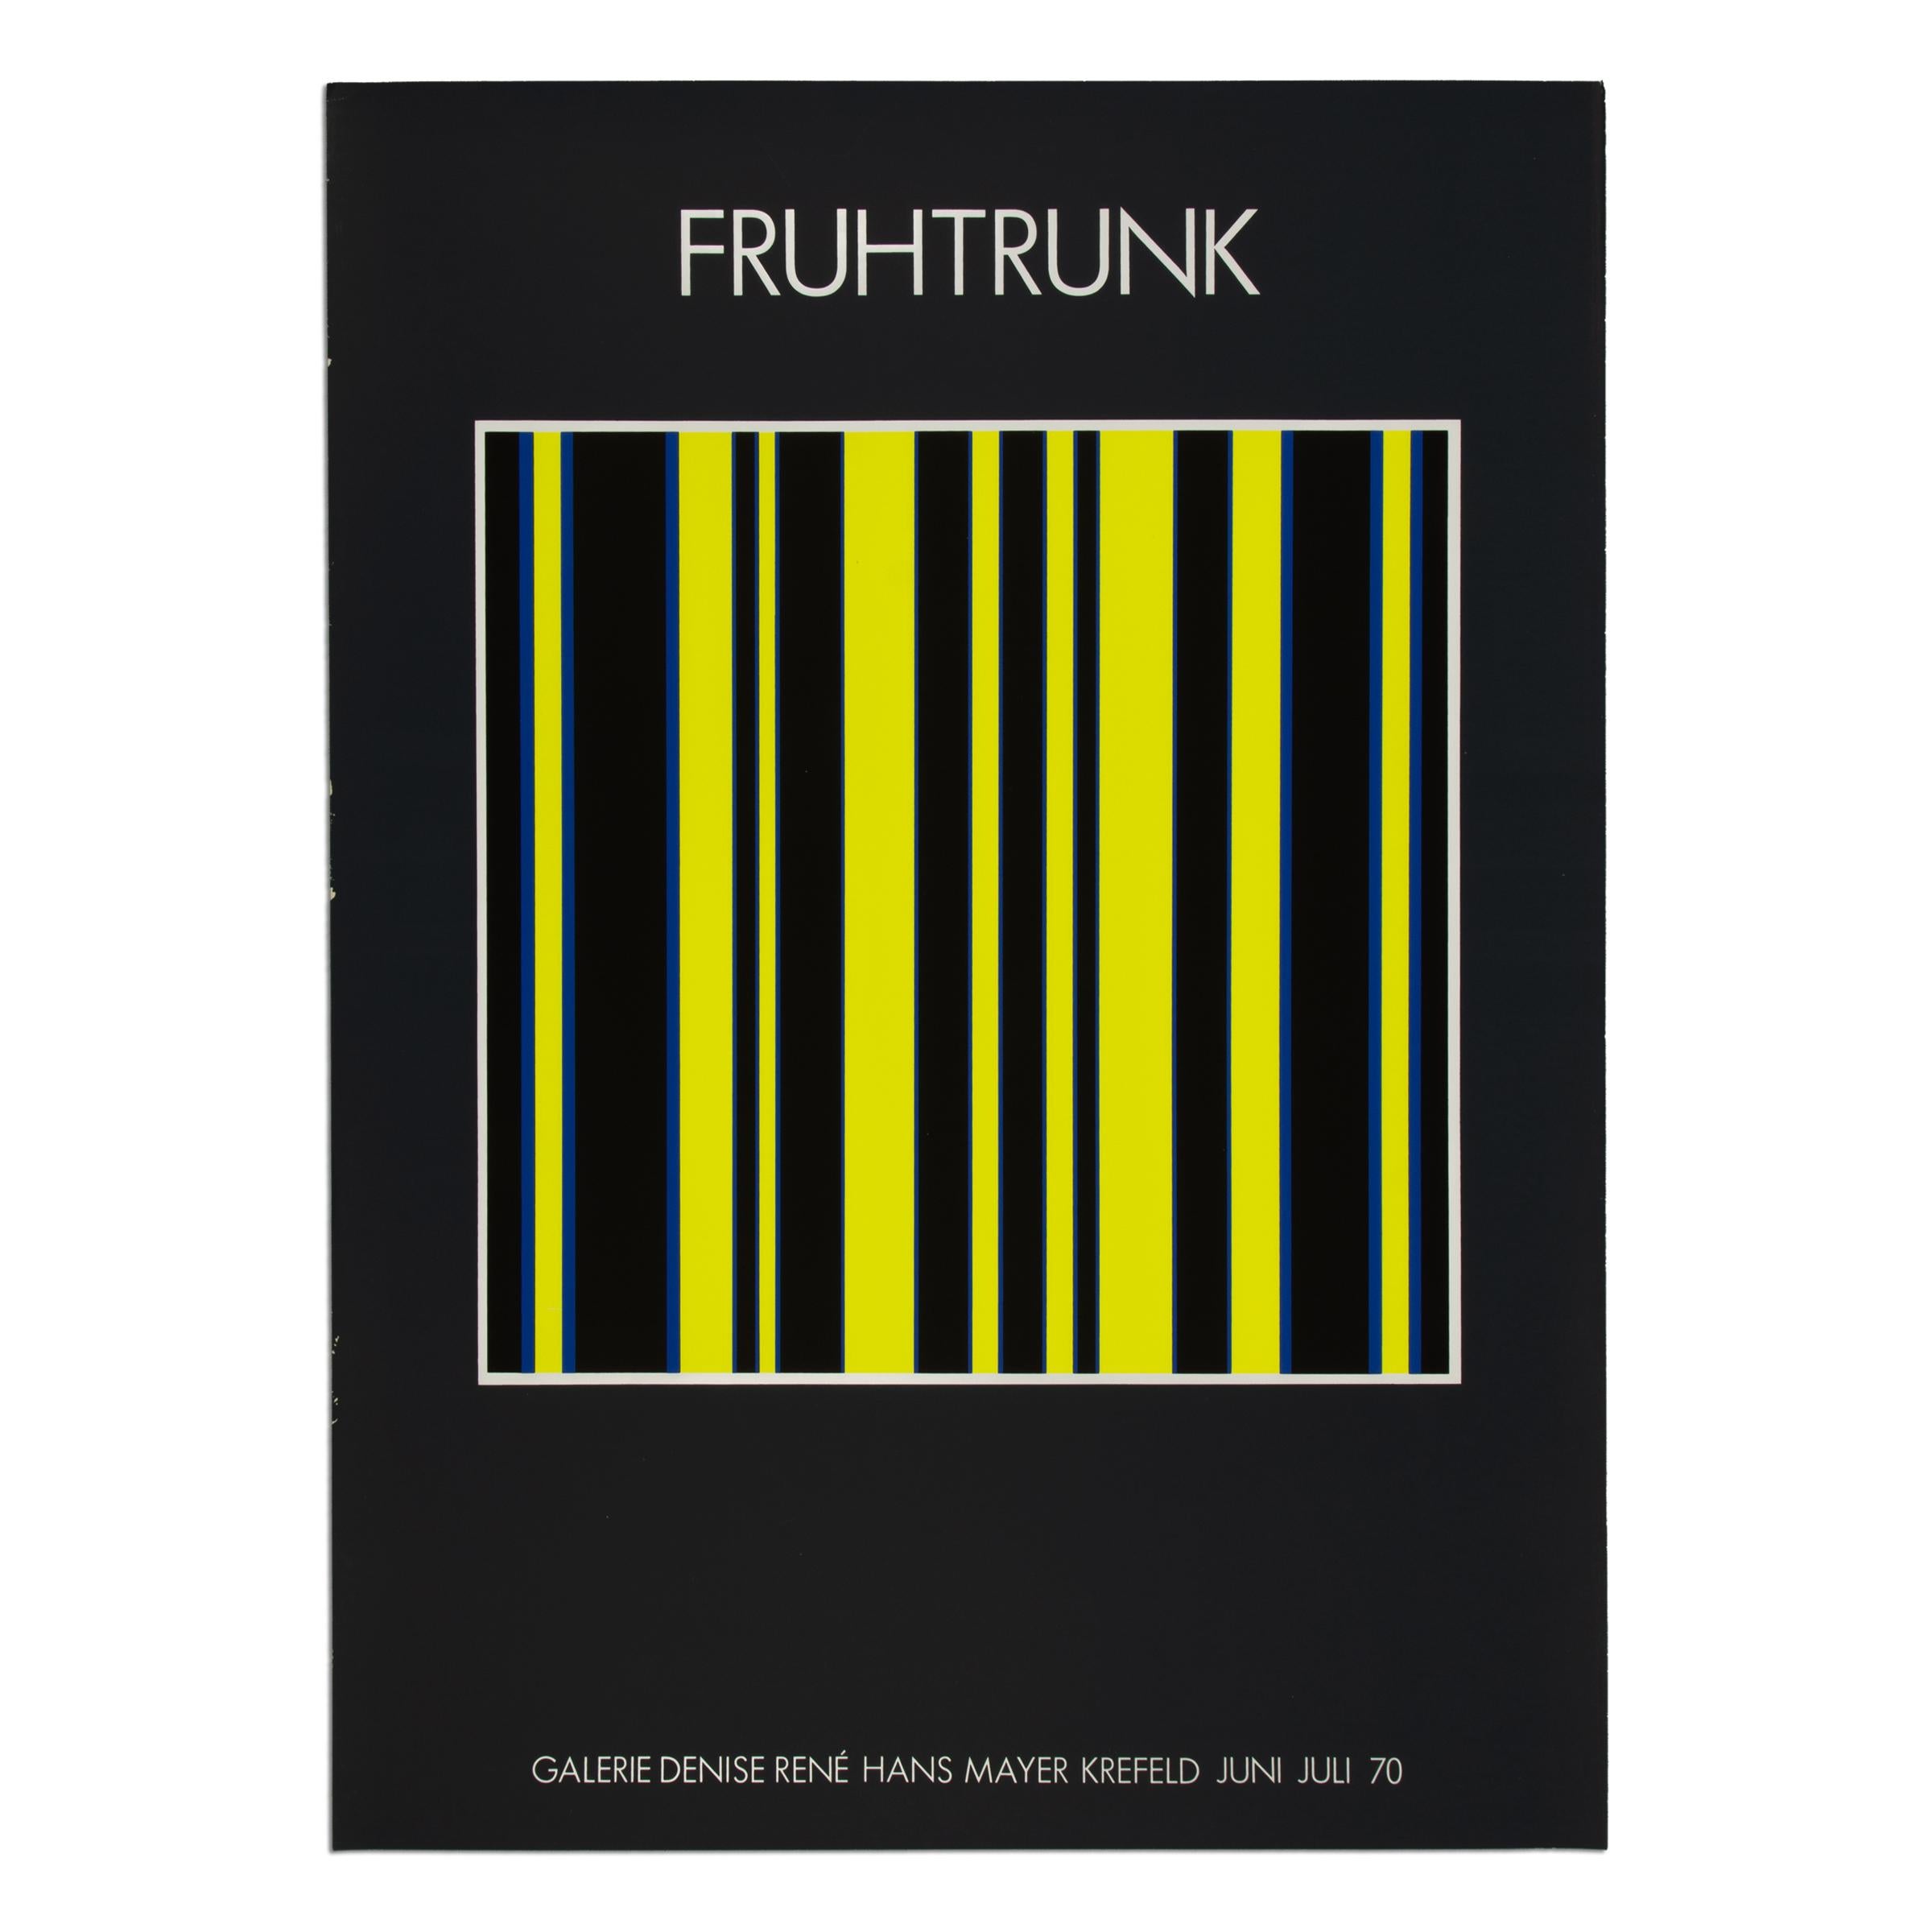 Gunter Fruhtrunk Abstract Print – Günter Fruhtrunk - Original Ausstellungsplakat von 1970, Siebdruck